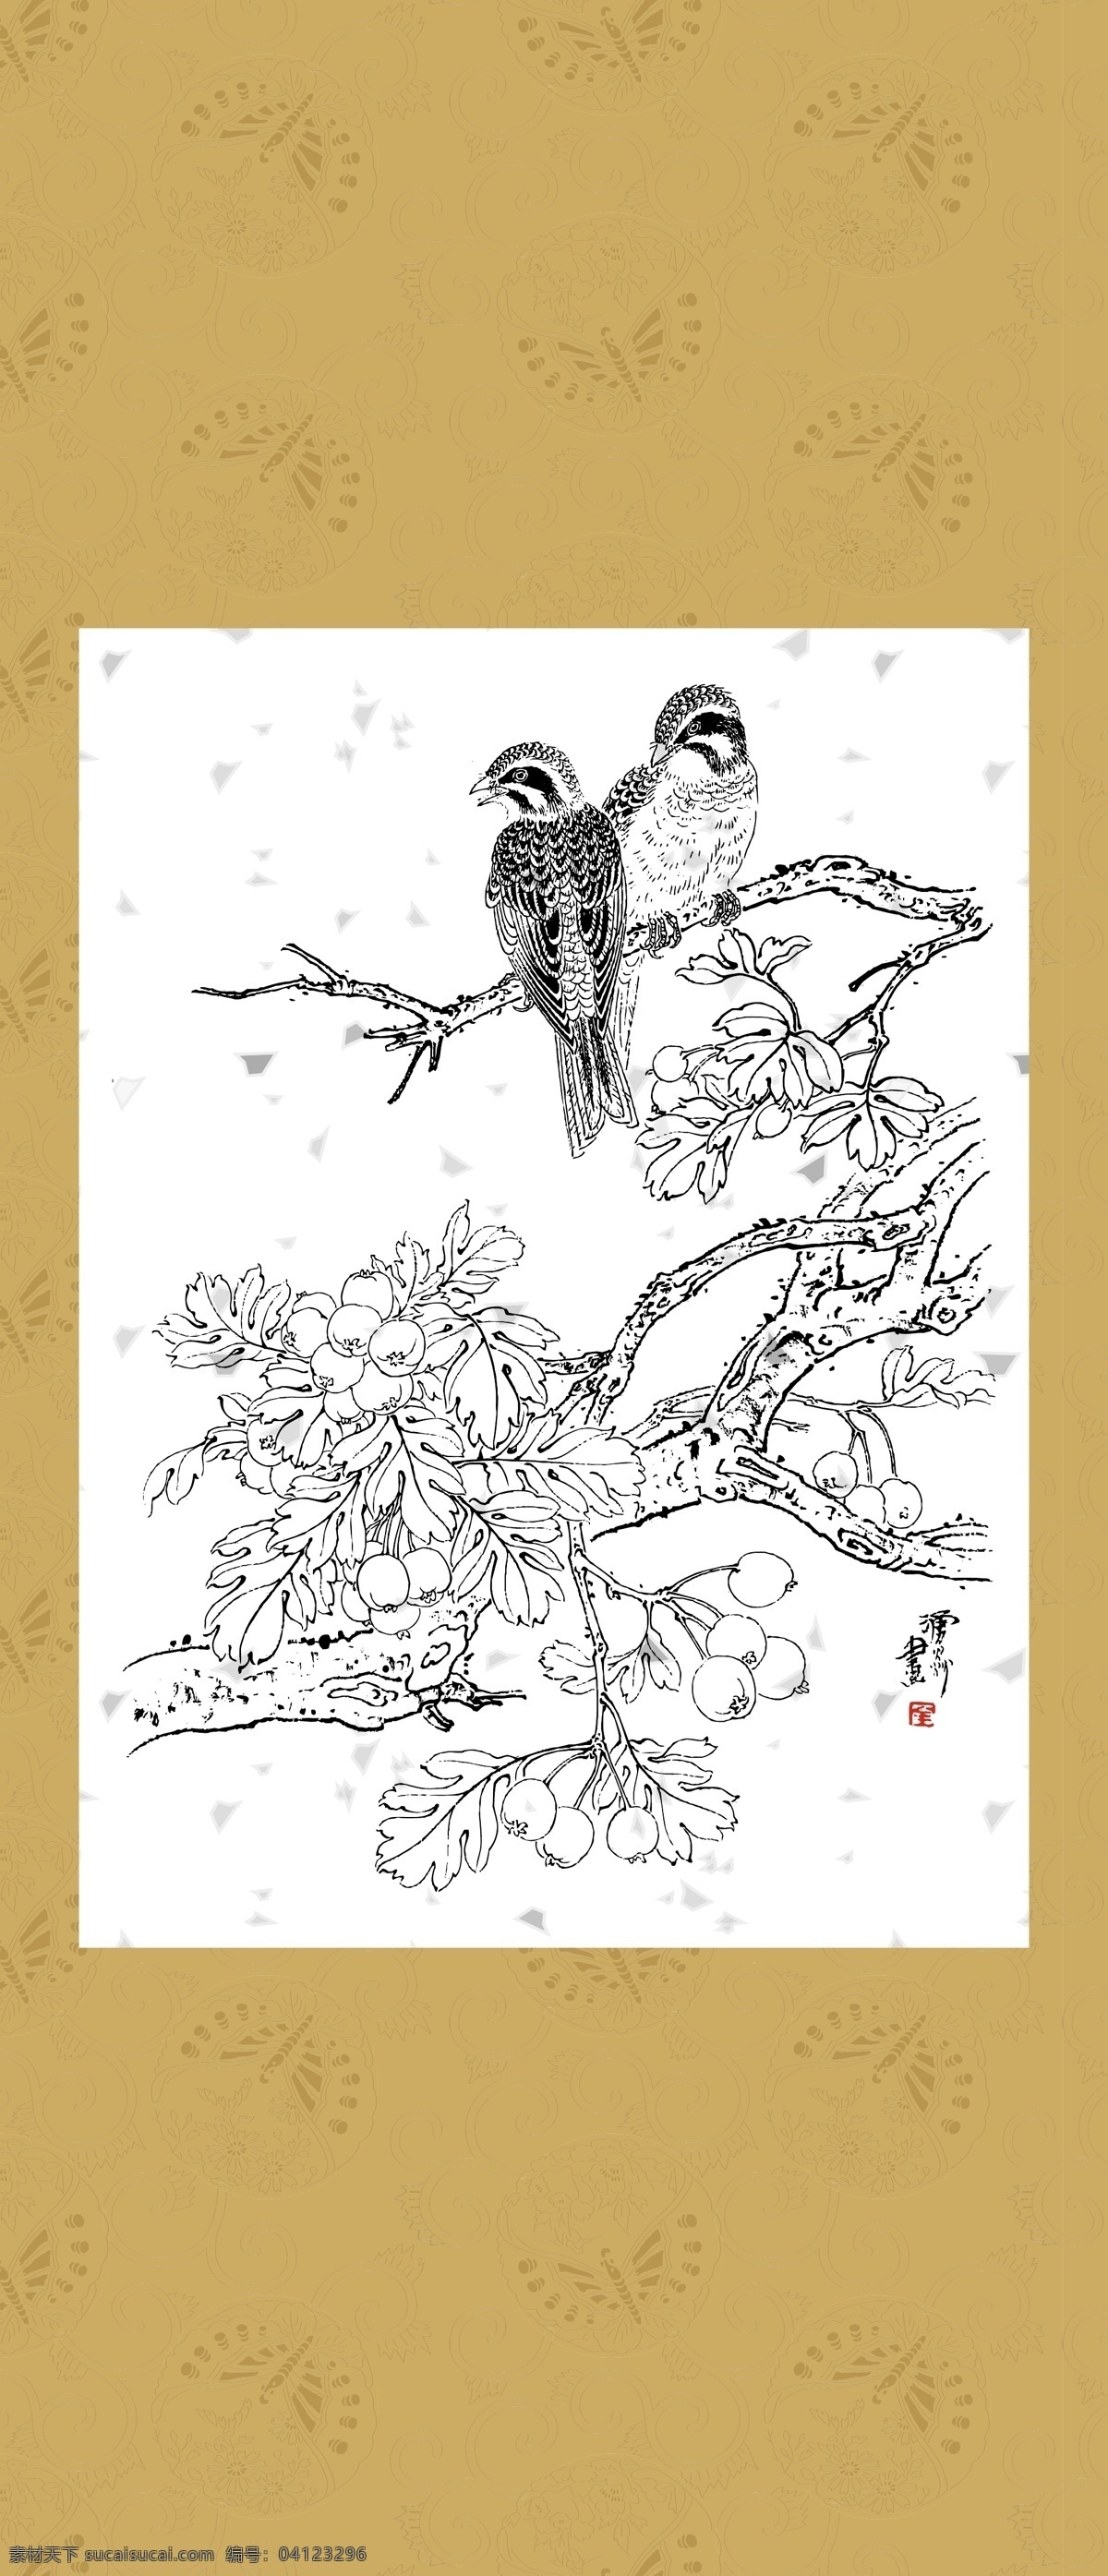 花鸟系列三十 花边 工笔 国画 白描 线描 团花 绘画 古典 传统纹样 花鸟 传统文化 文化艺术 矢量